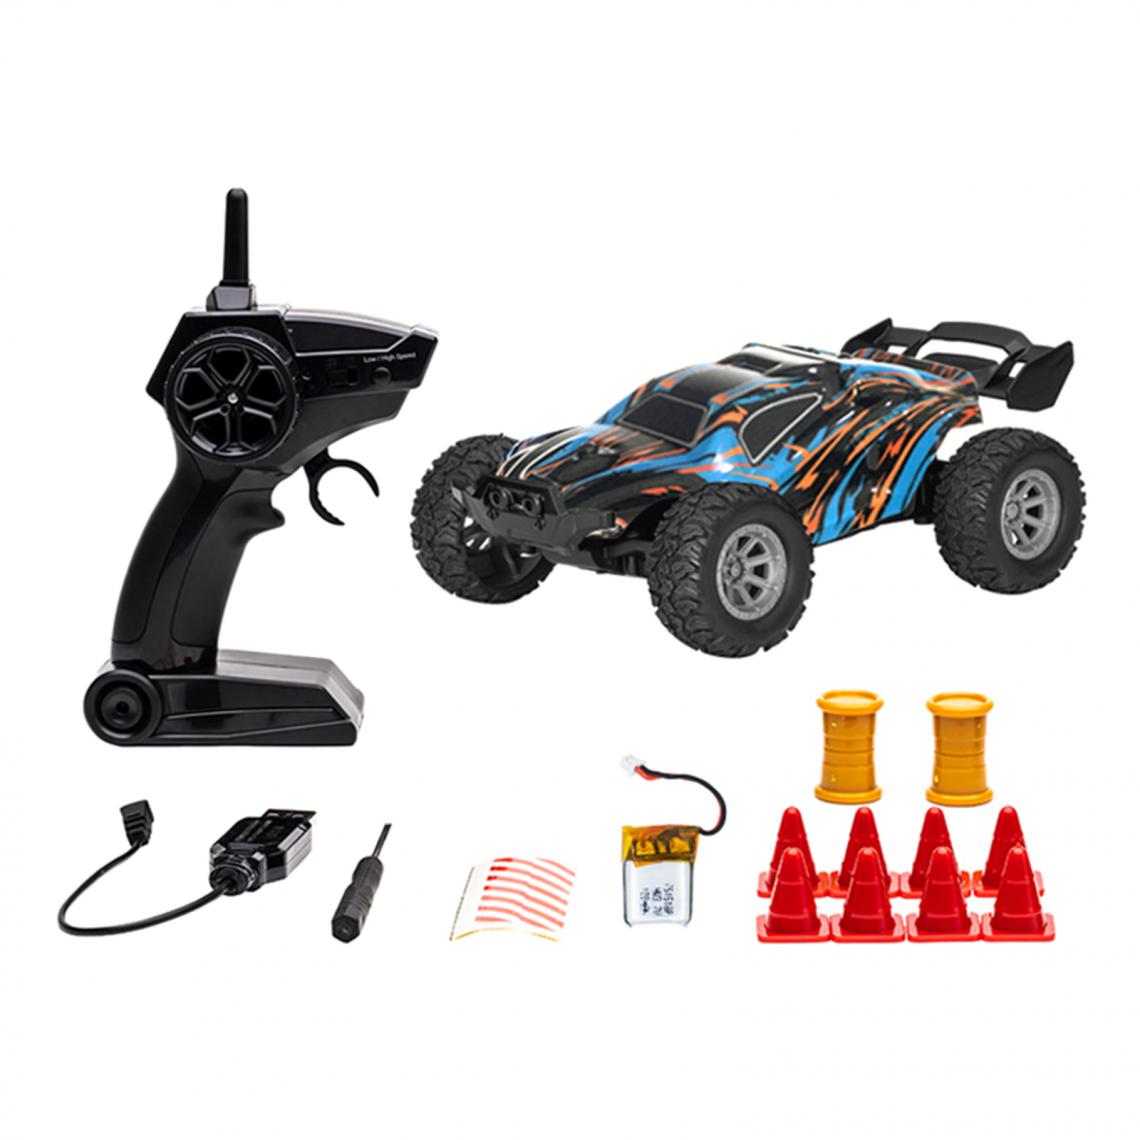 marque generique - 2.4Ghz 1/32 RC Racing Car Kit Télécommande 2WD Buggy Kids Toy Upgrade - Accessoires maquettes